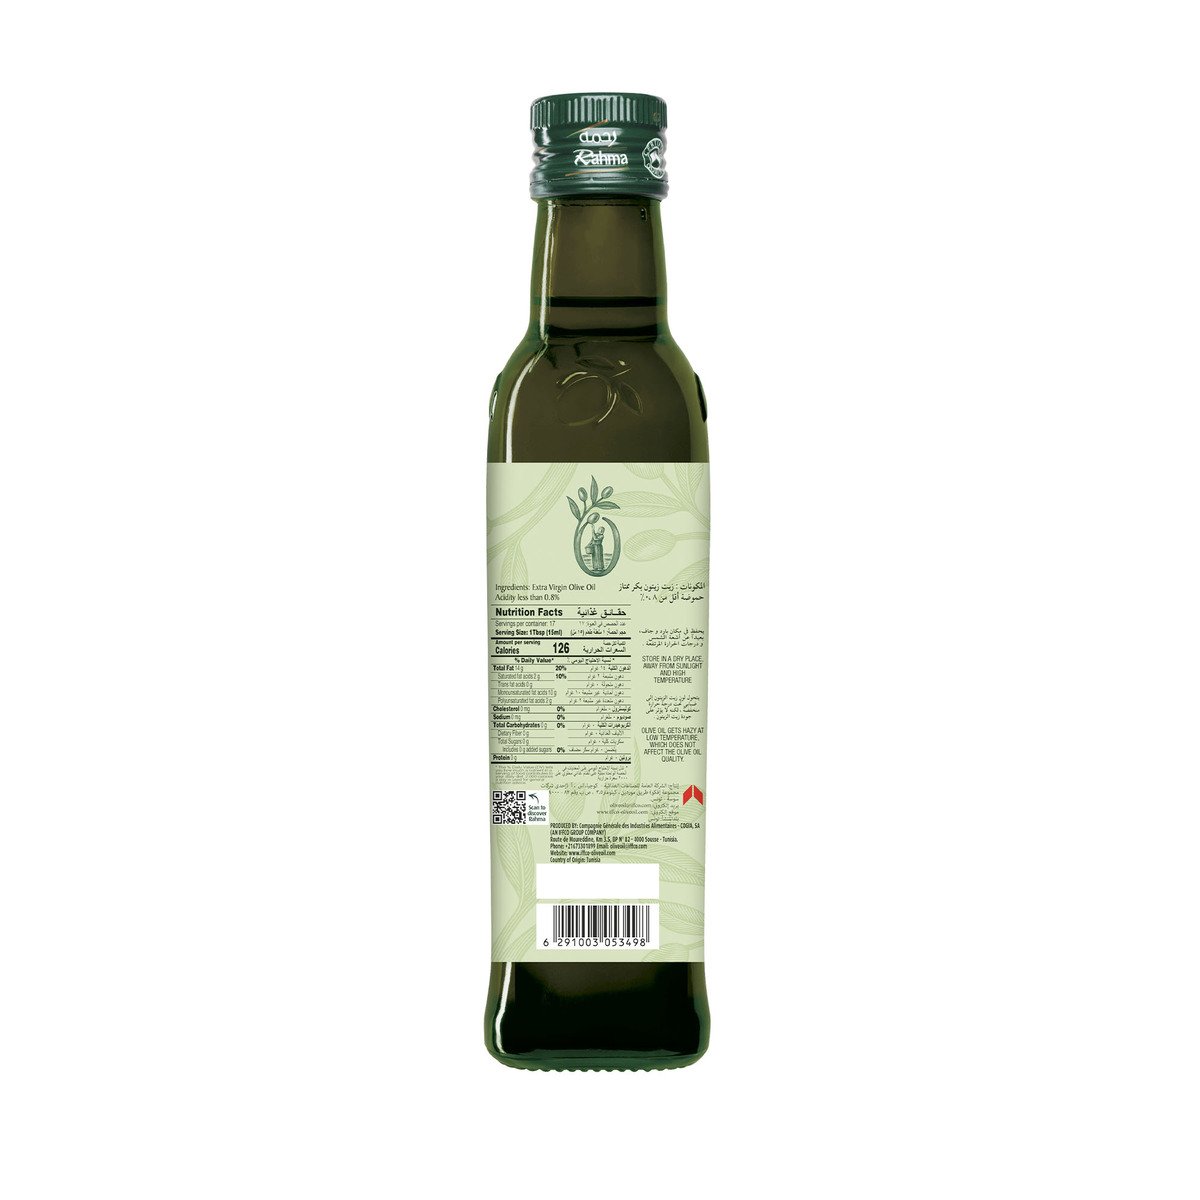 Rahma Extra Virgin Olive Oil 250 ml